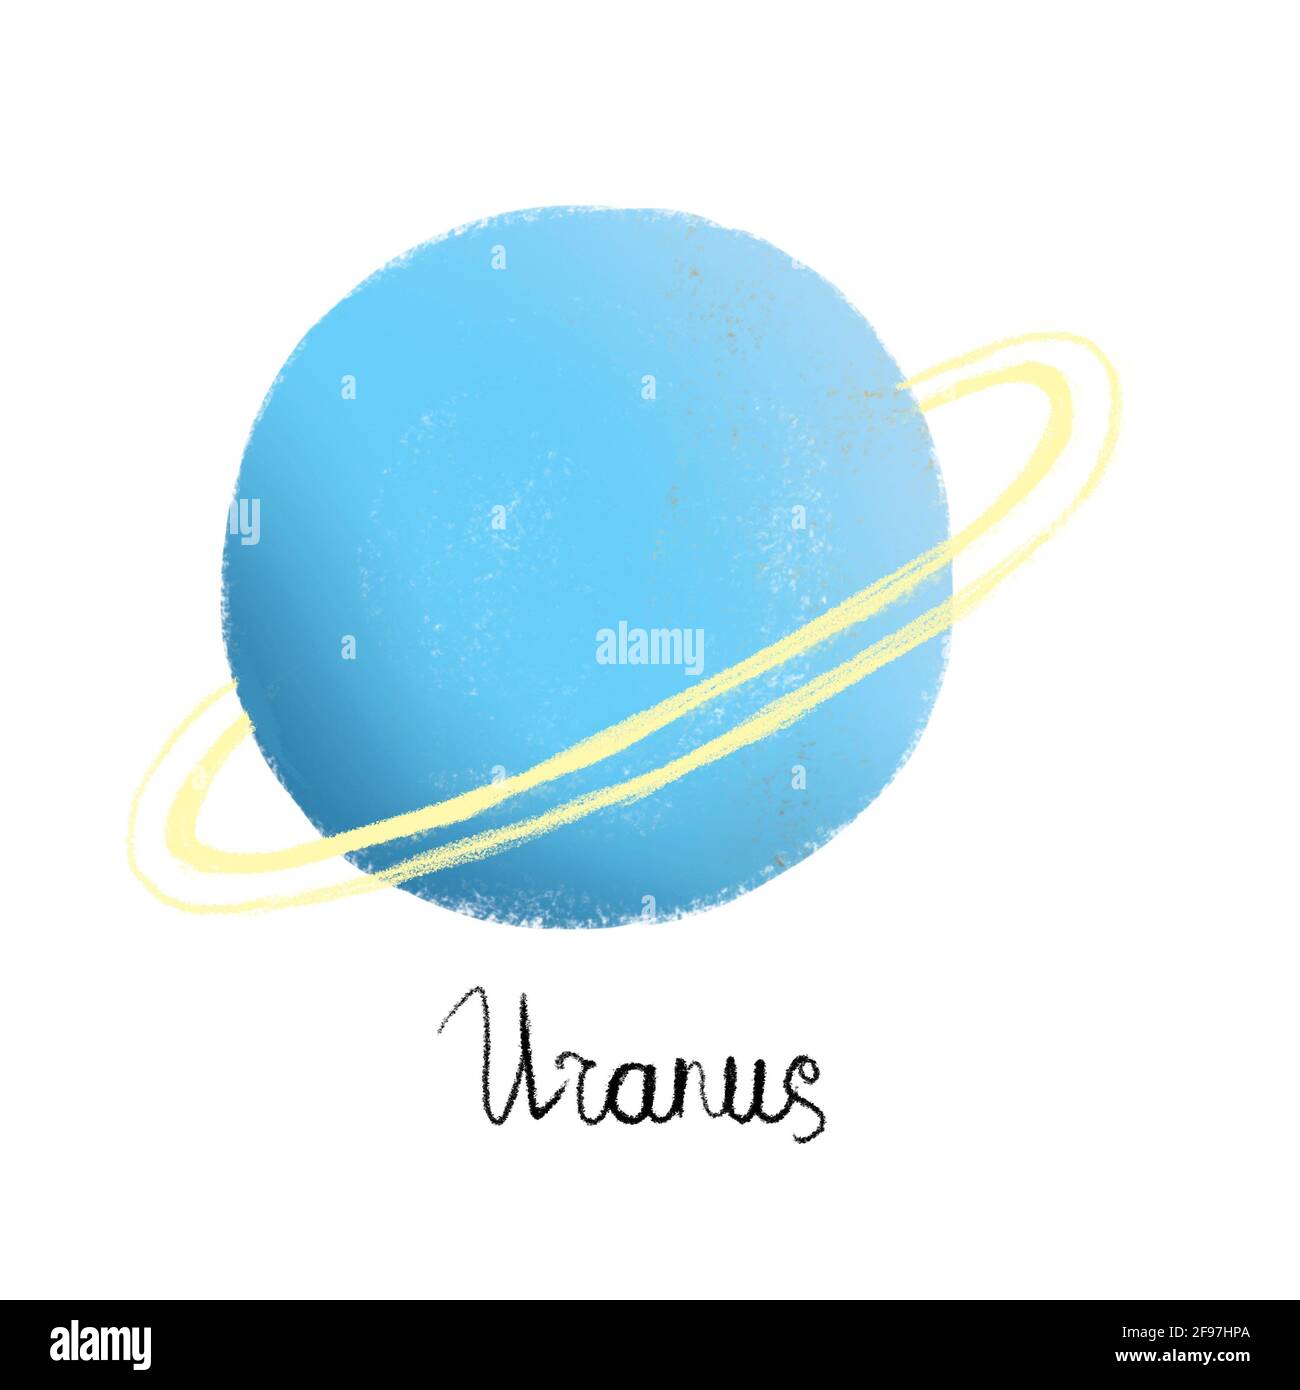 Hành tinh Uranus đáng yêu nổi bật trên nền trắng, với một lớp mây lan tỏa trần trụi và các sọc có màu xanh huyền bí. Hãy để Uranus trở thành nguồn cảm hứng cho bạn với sự nổi bật và độc đáo của nó trên nền trắng tinh khôi.